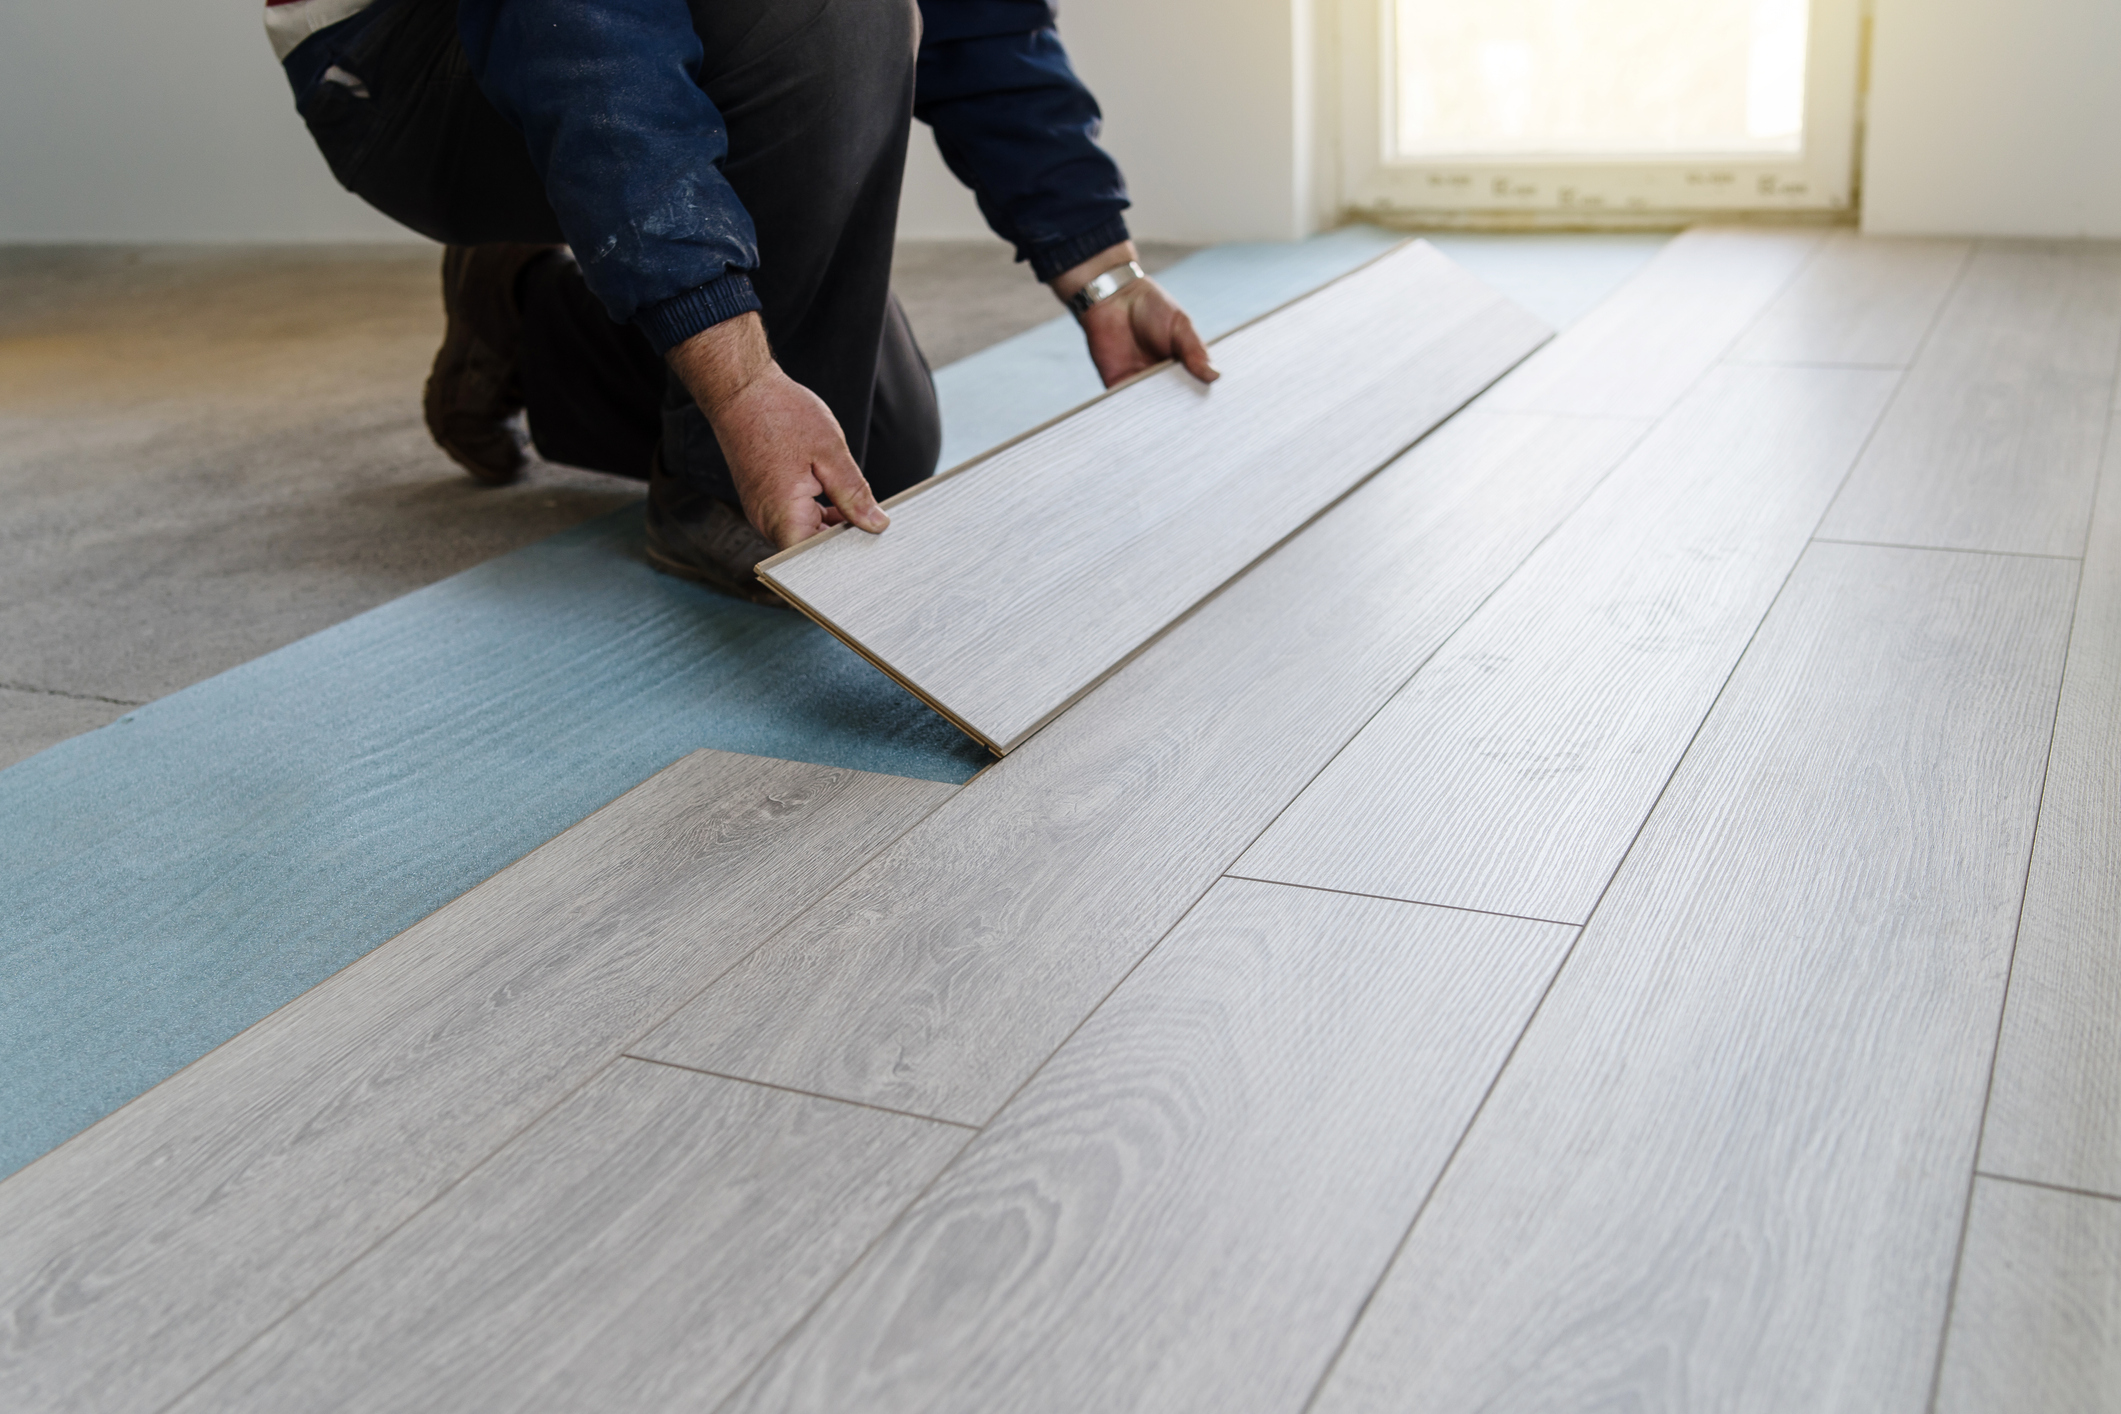 Easy Temporary Flooring Ideas, Can U Put Laminate Flooring Over Carpet